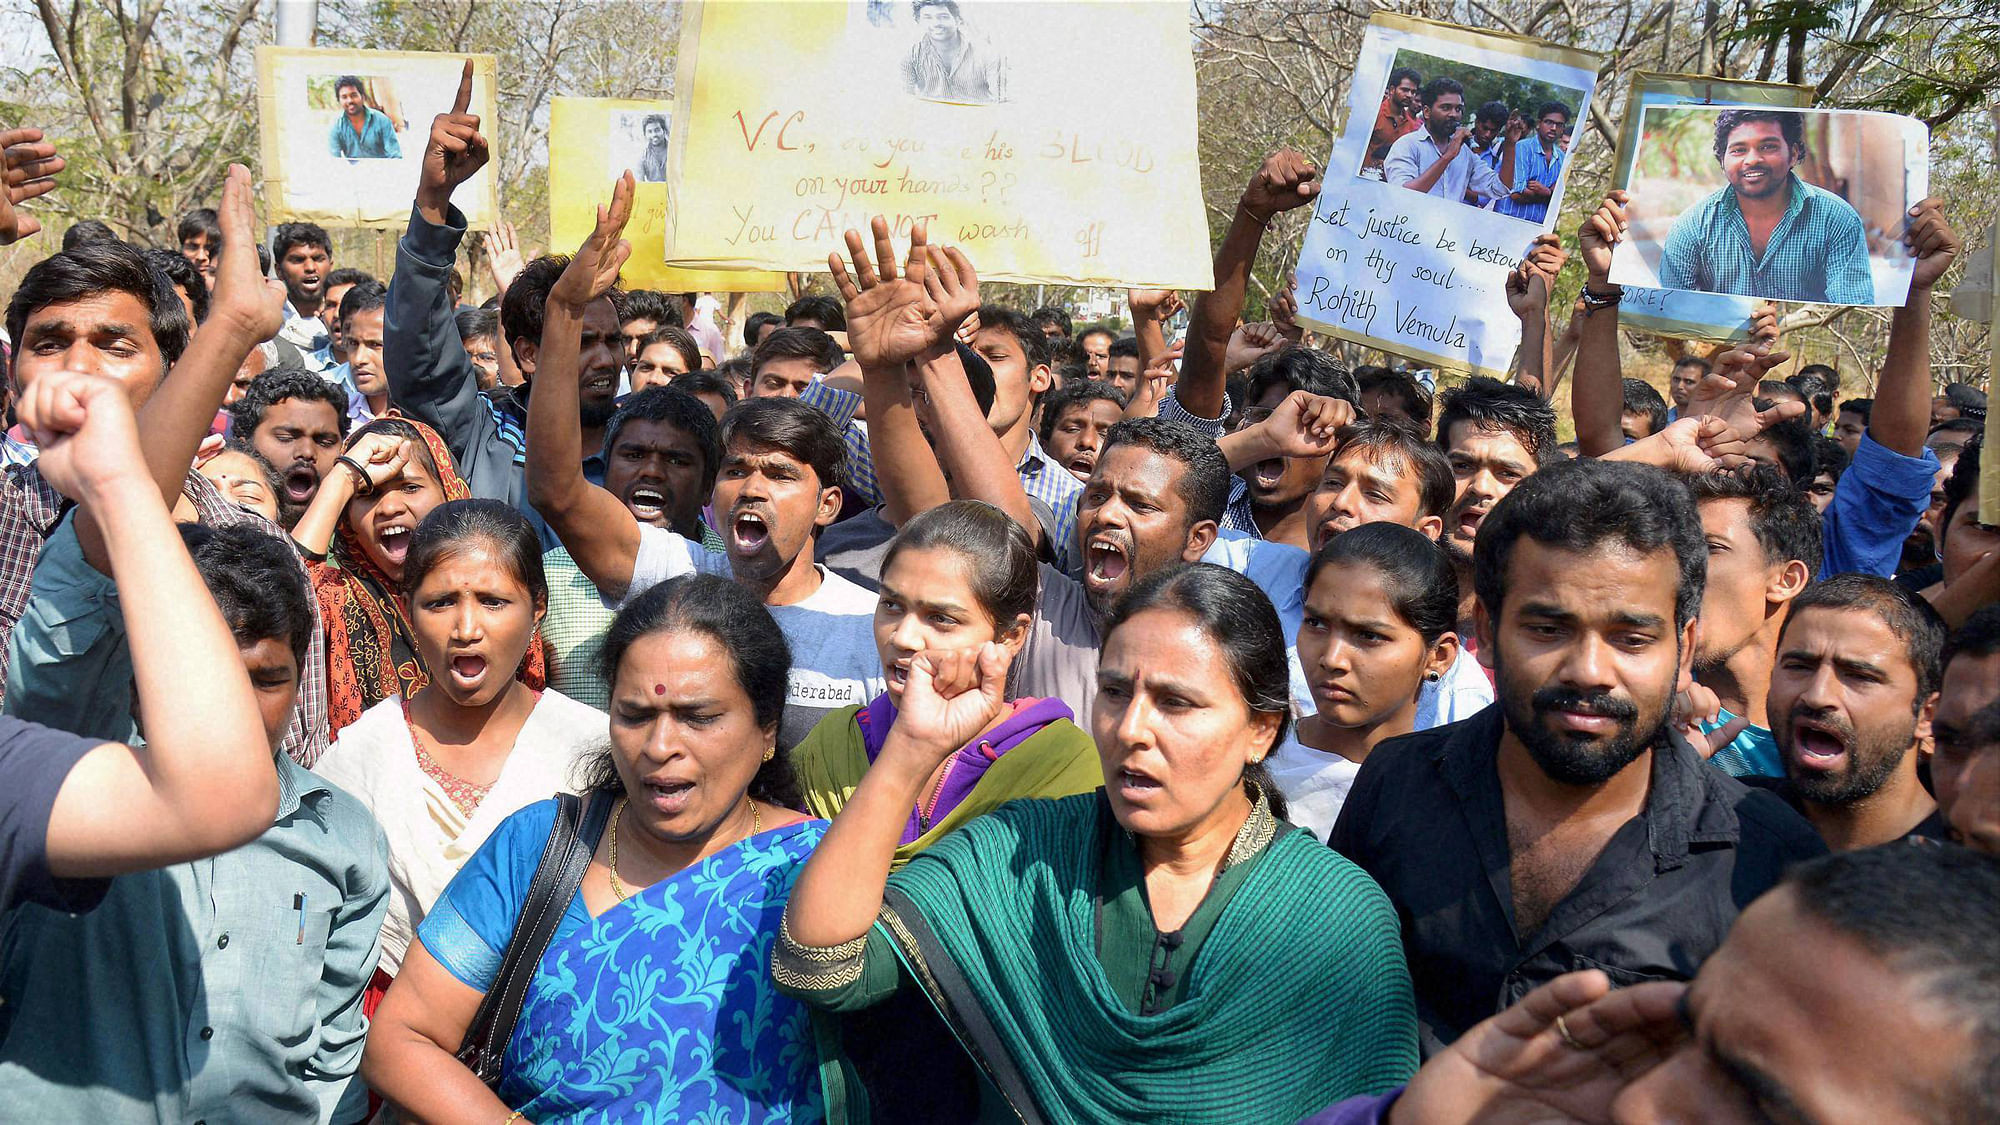 हैदराबाद विश्वविद्यालय के दलित छात्र रोहित वेमुला की आत्महत्या के बाद विरोध प्रदर्शन करते छात्र. (फोटो: PTI)